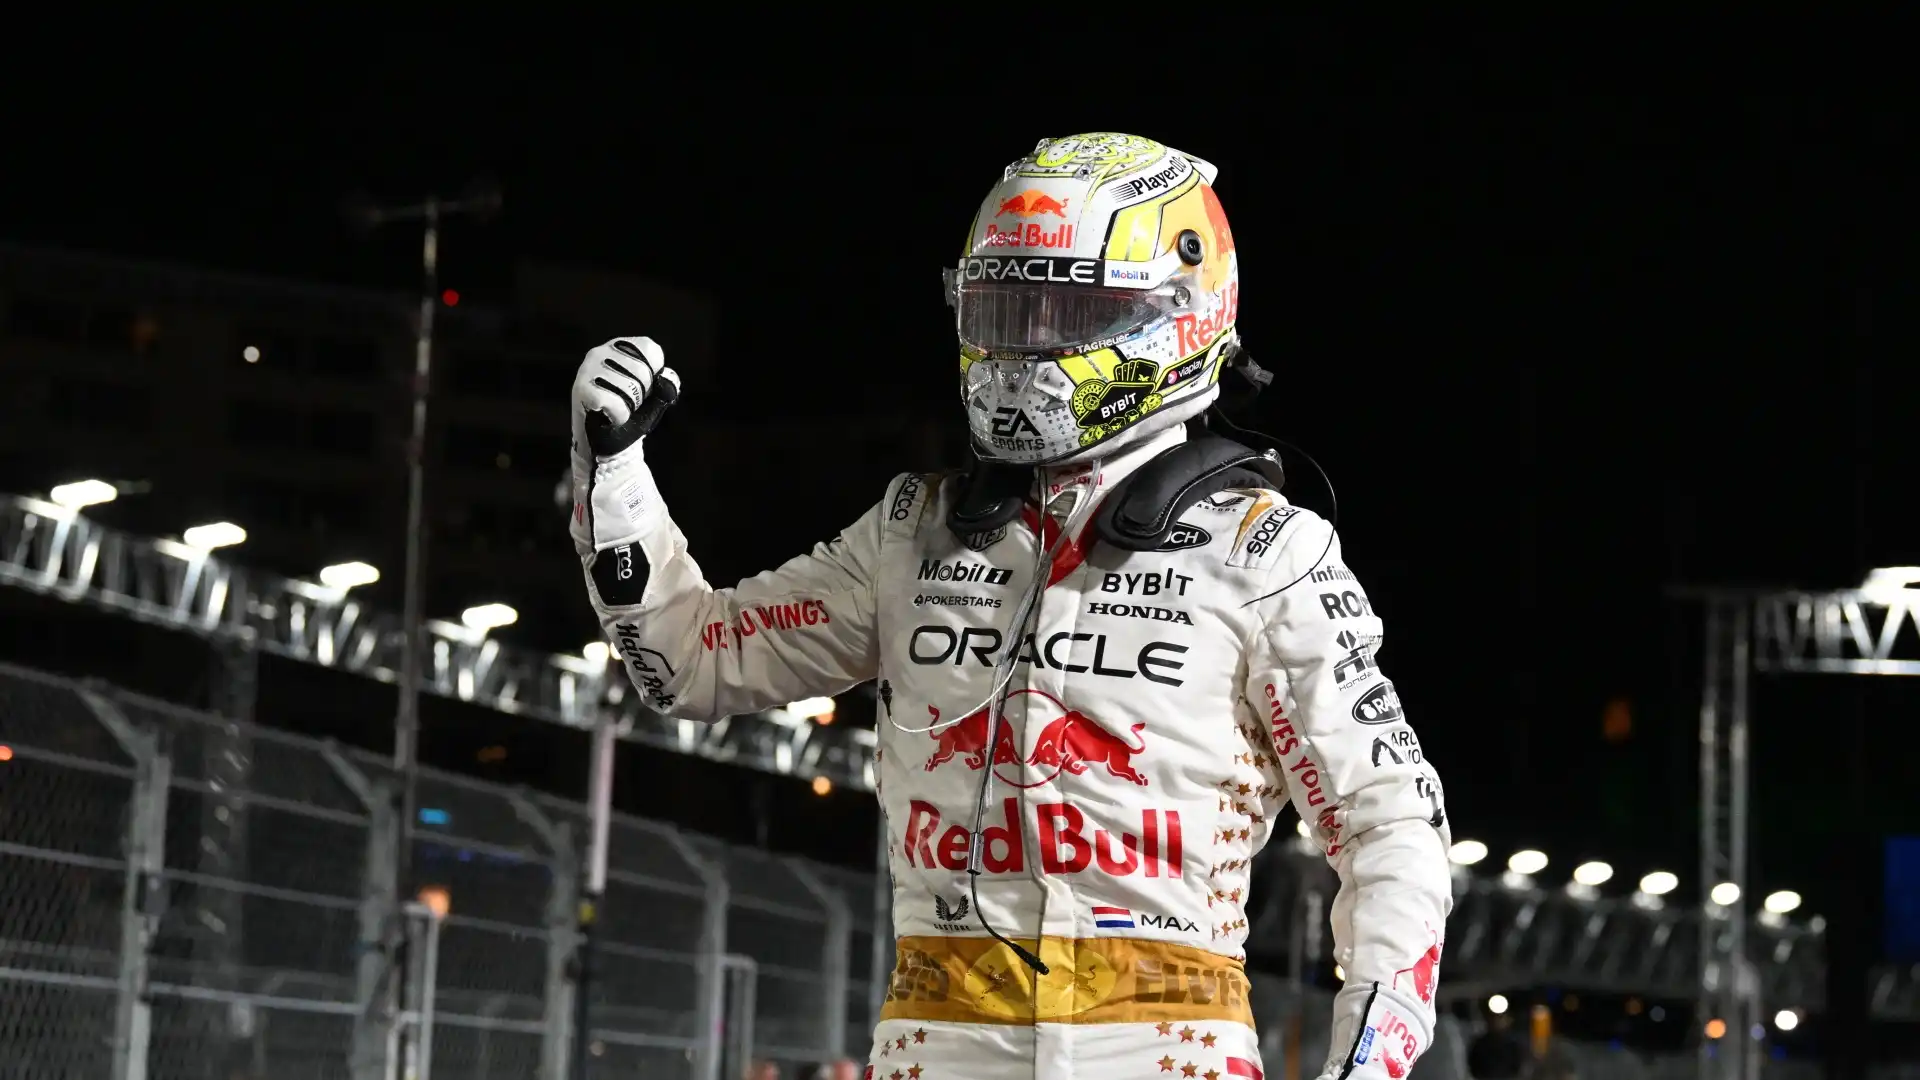 F1, Max Verstappen come Sebastian Vettel: “Molto divertente”